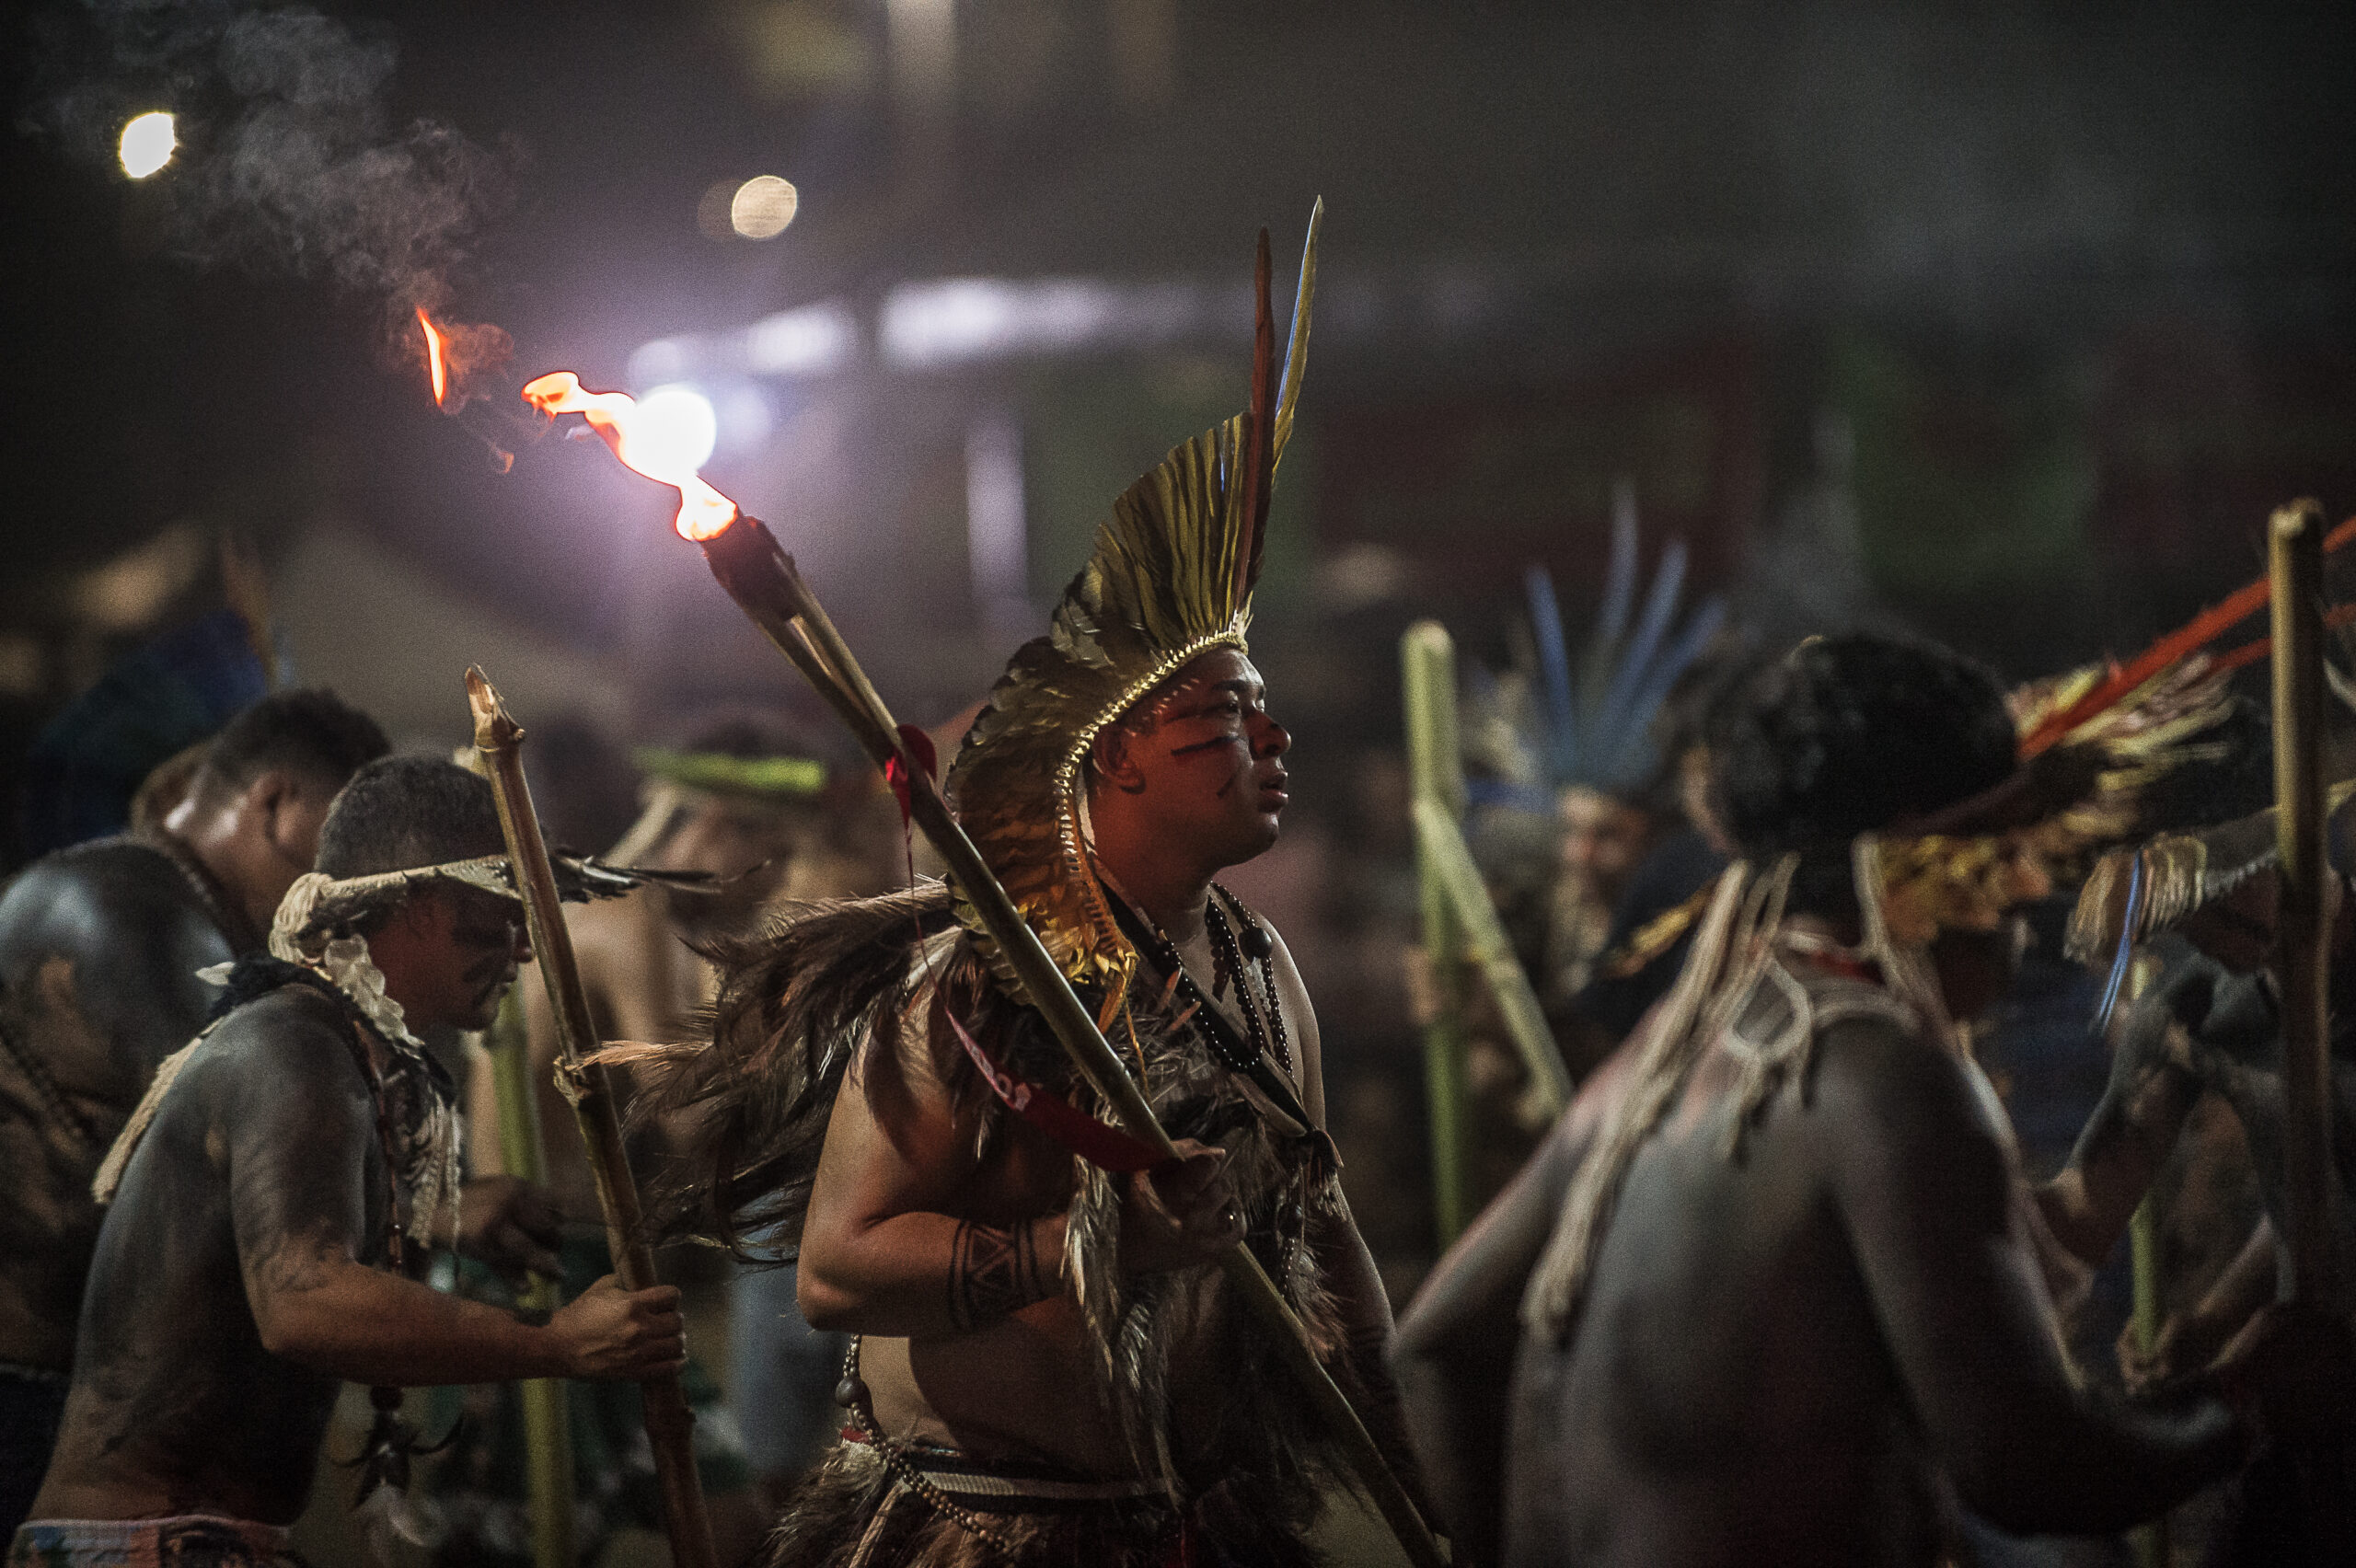 Homens indígenas fazem dança com tochas em protesto do Acampamento Terra Livre.